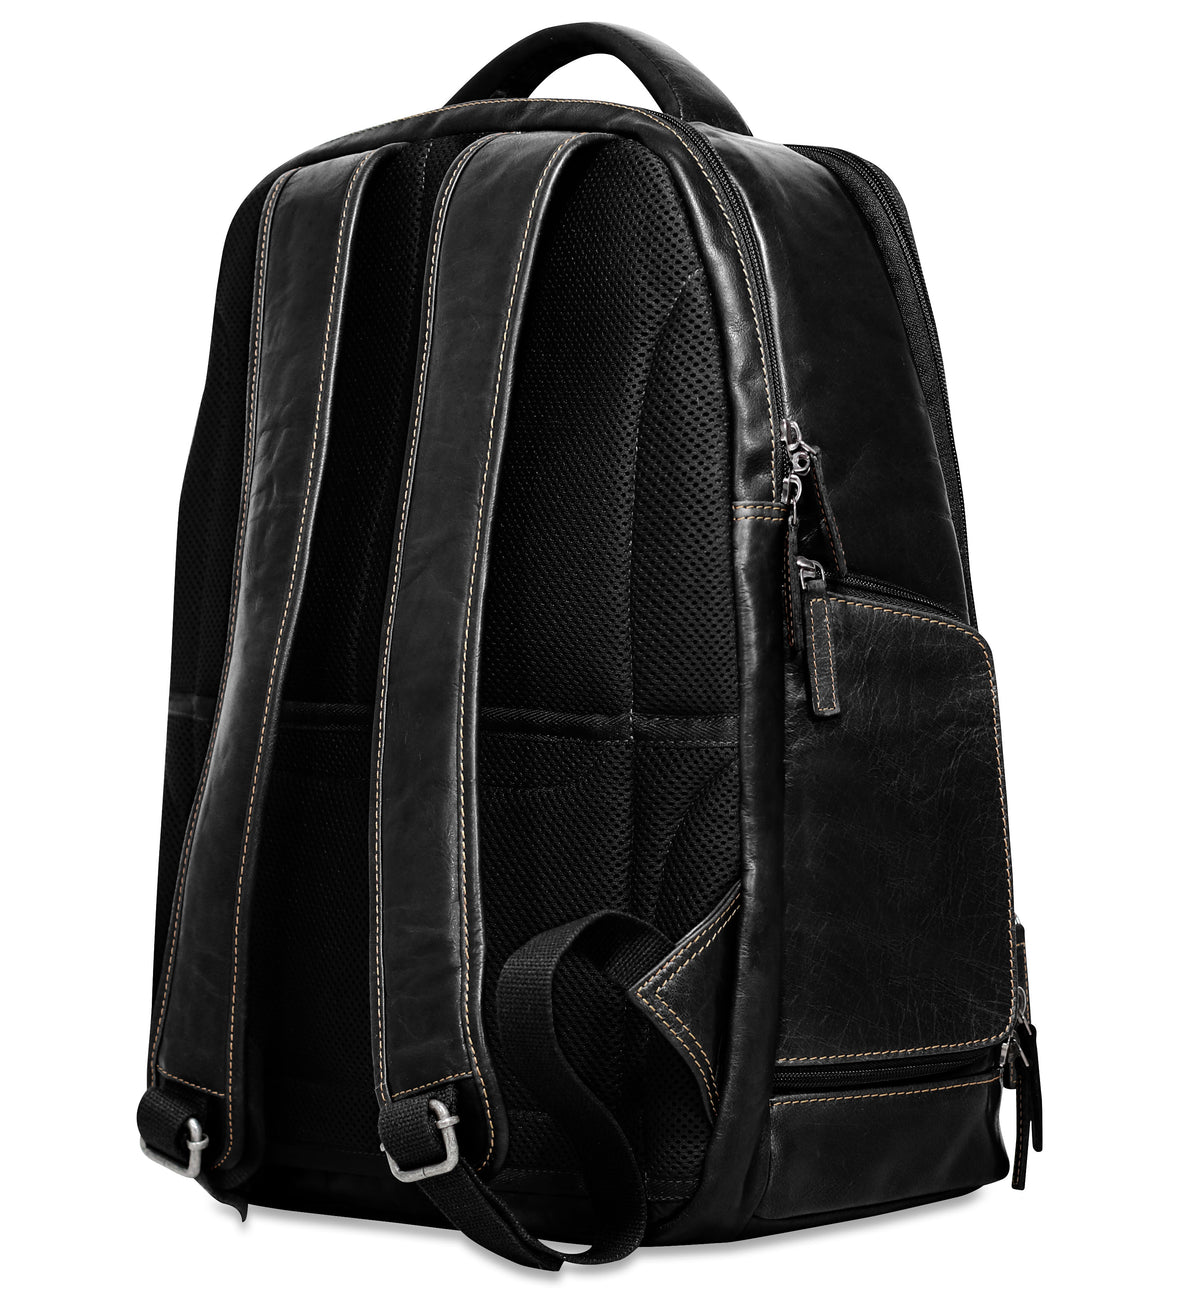 ☆新春福袋2021☆ Voyager Tech Backpack #7527 (Black)